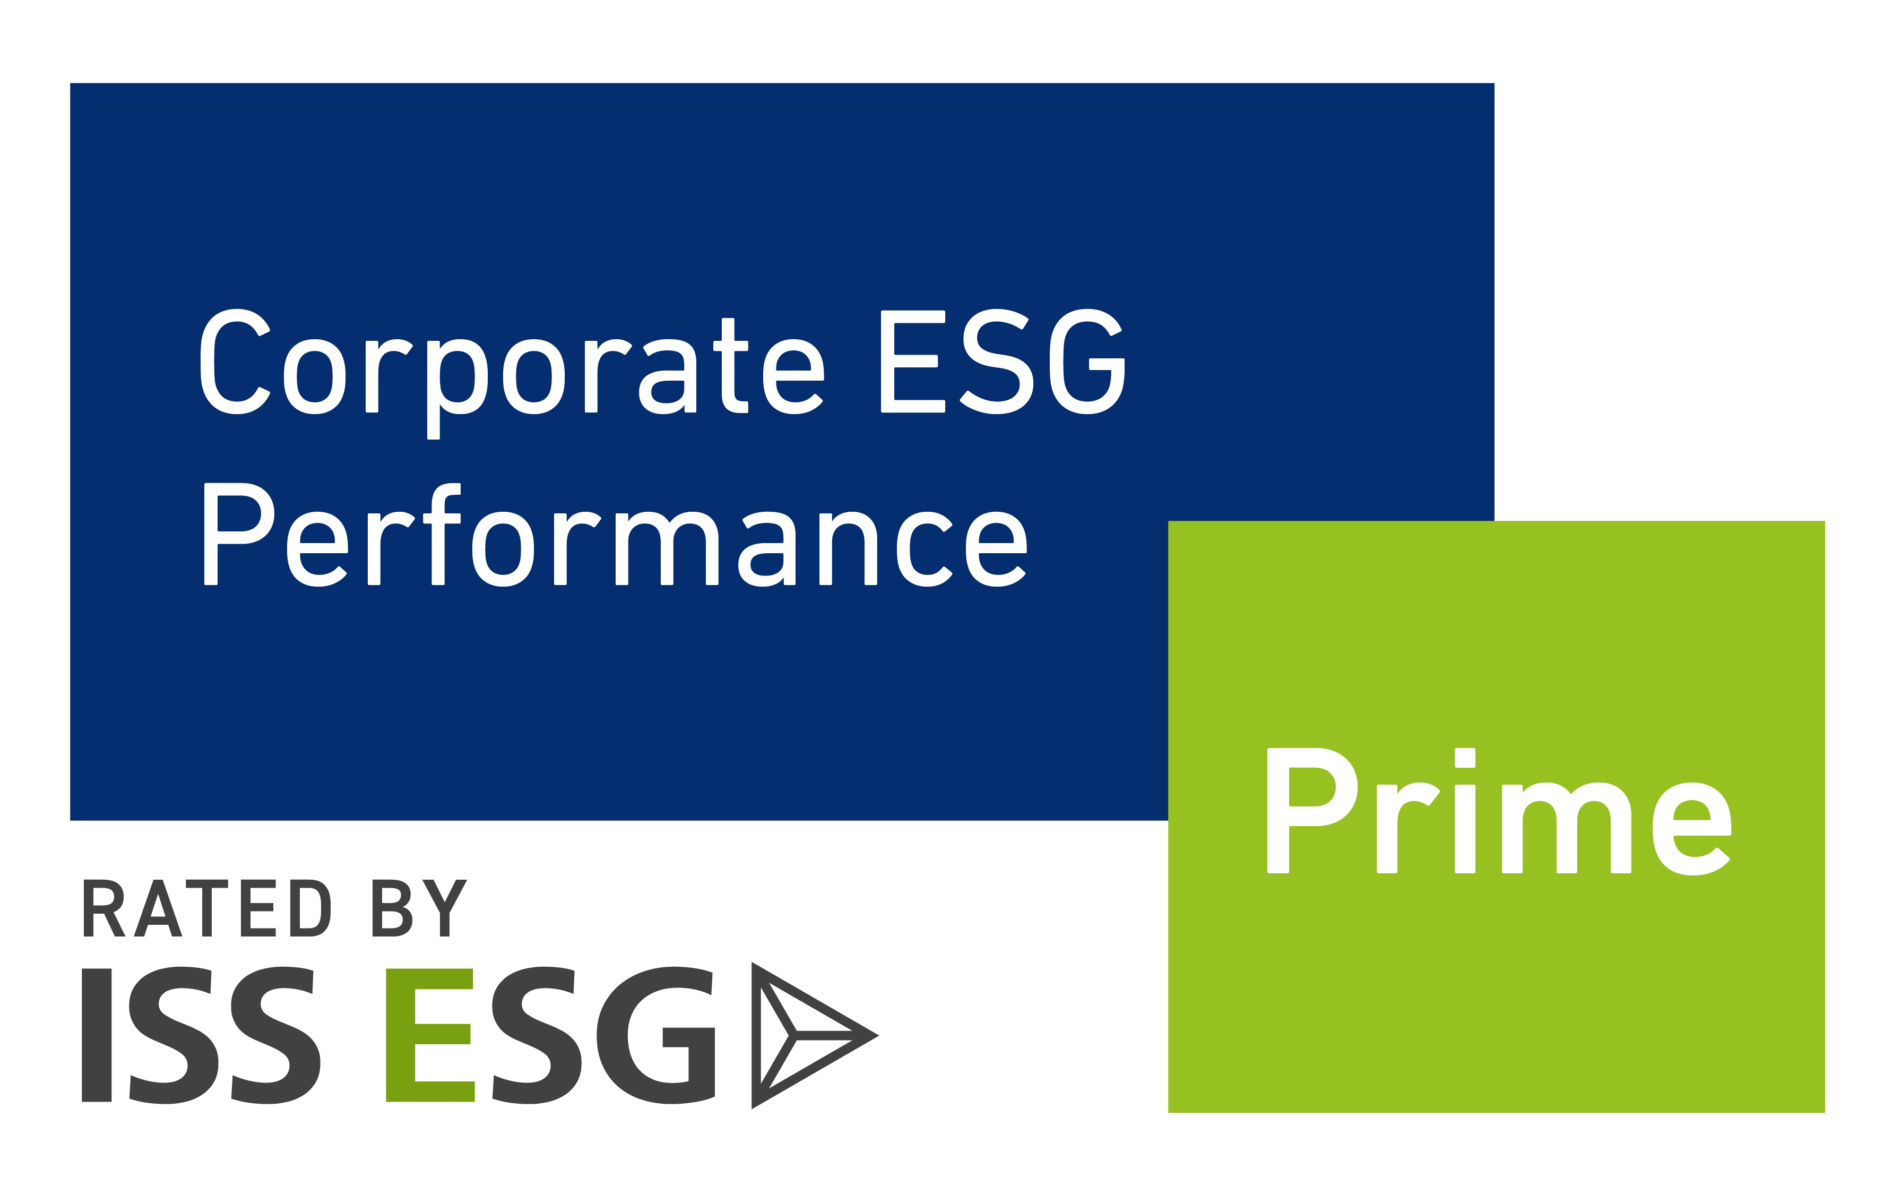 Medium: Corporate ESG Performance